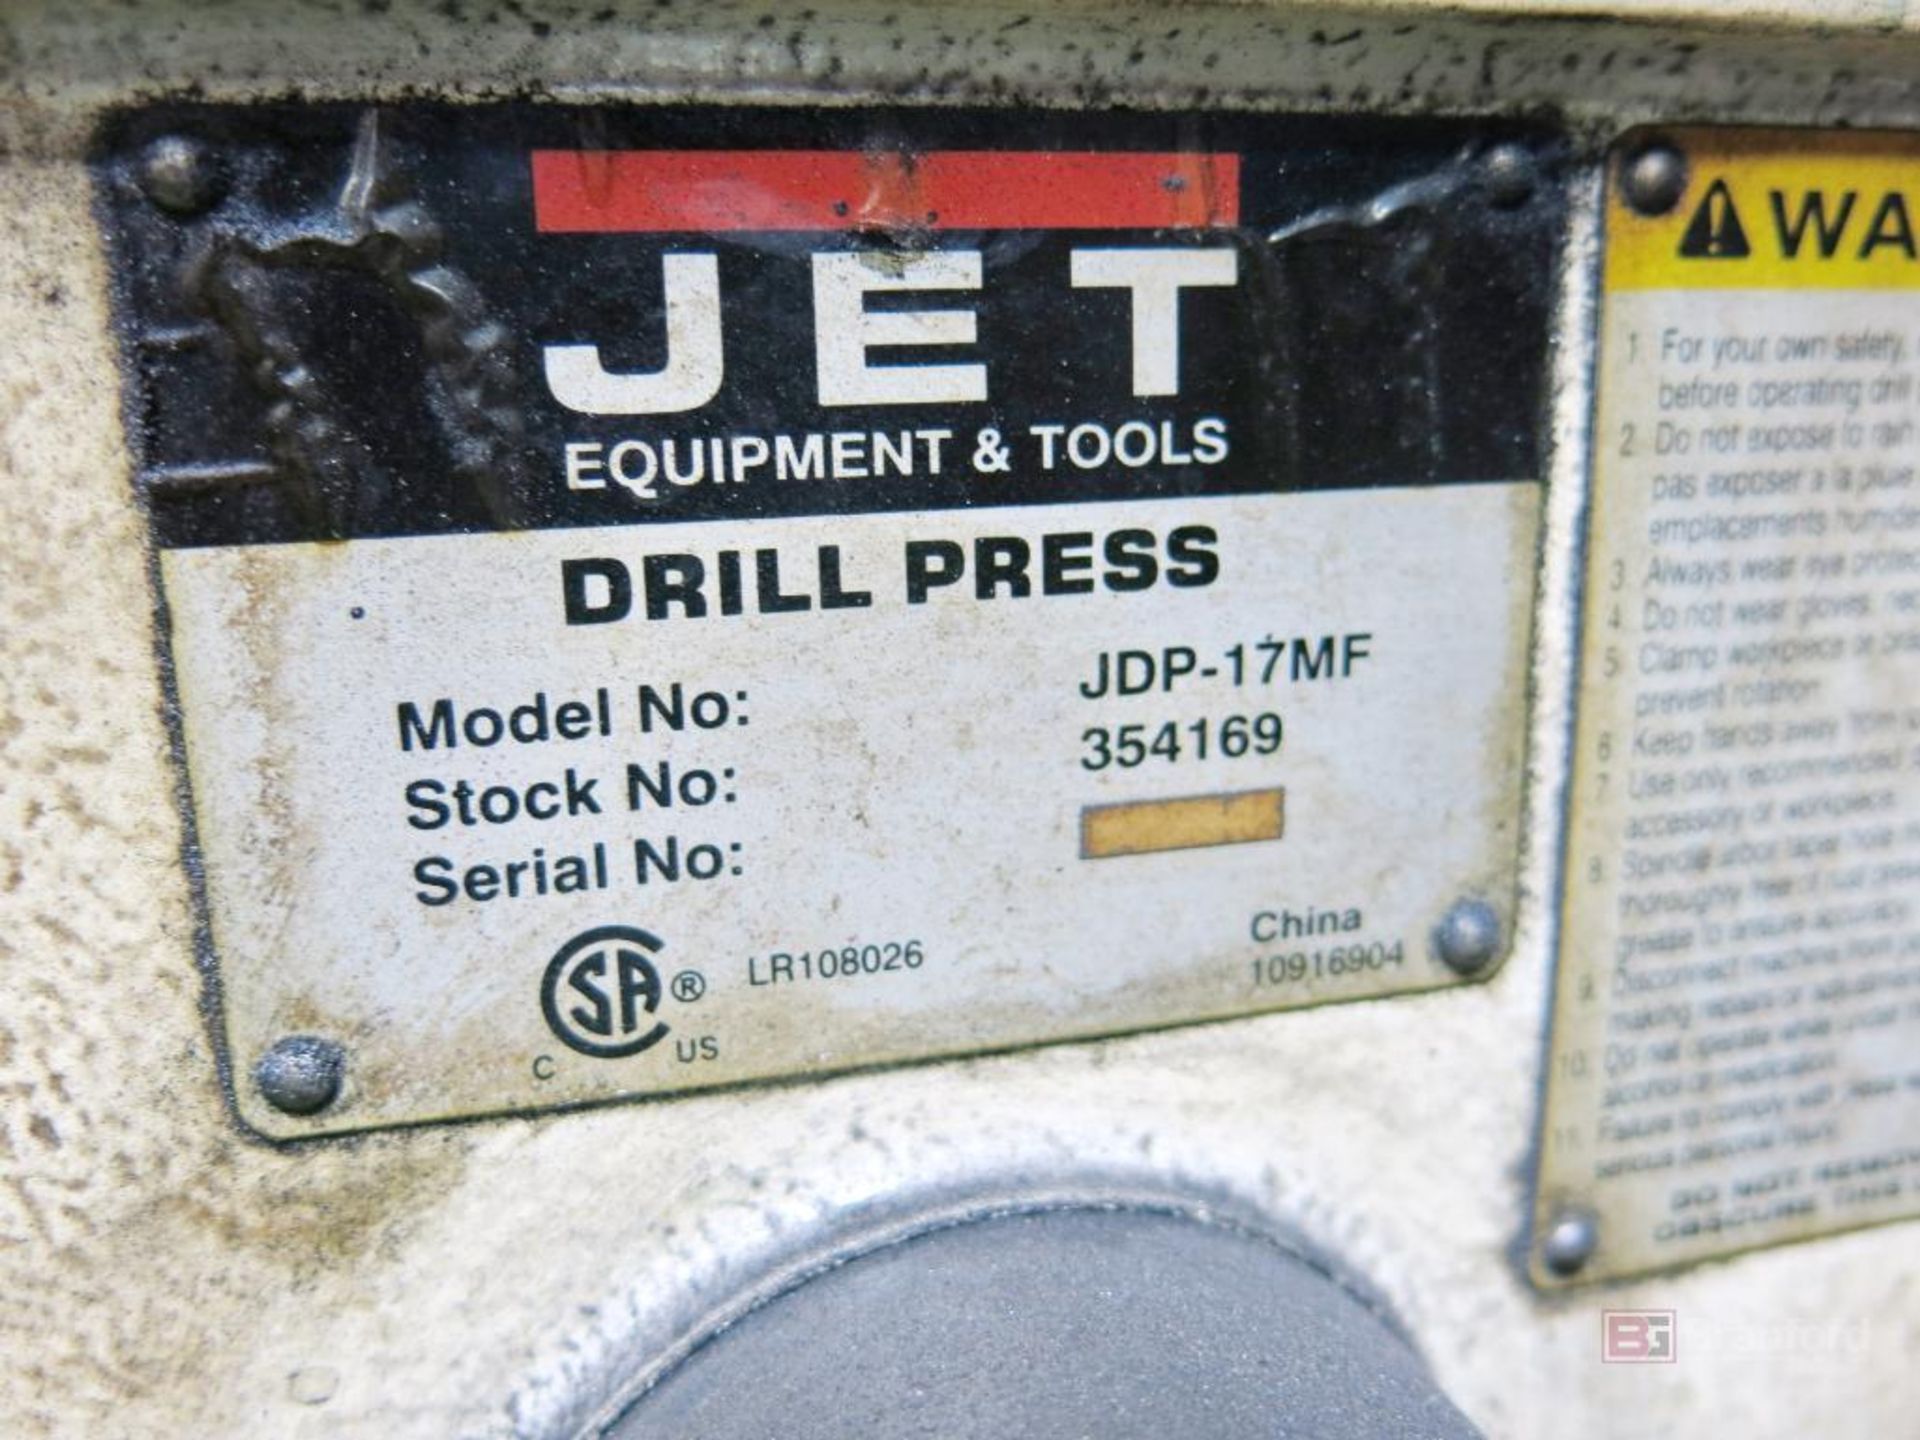 Jet Model JDT-17MF Pedestal Drill Press - Image 3 of 3